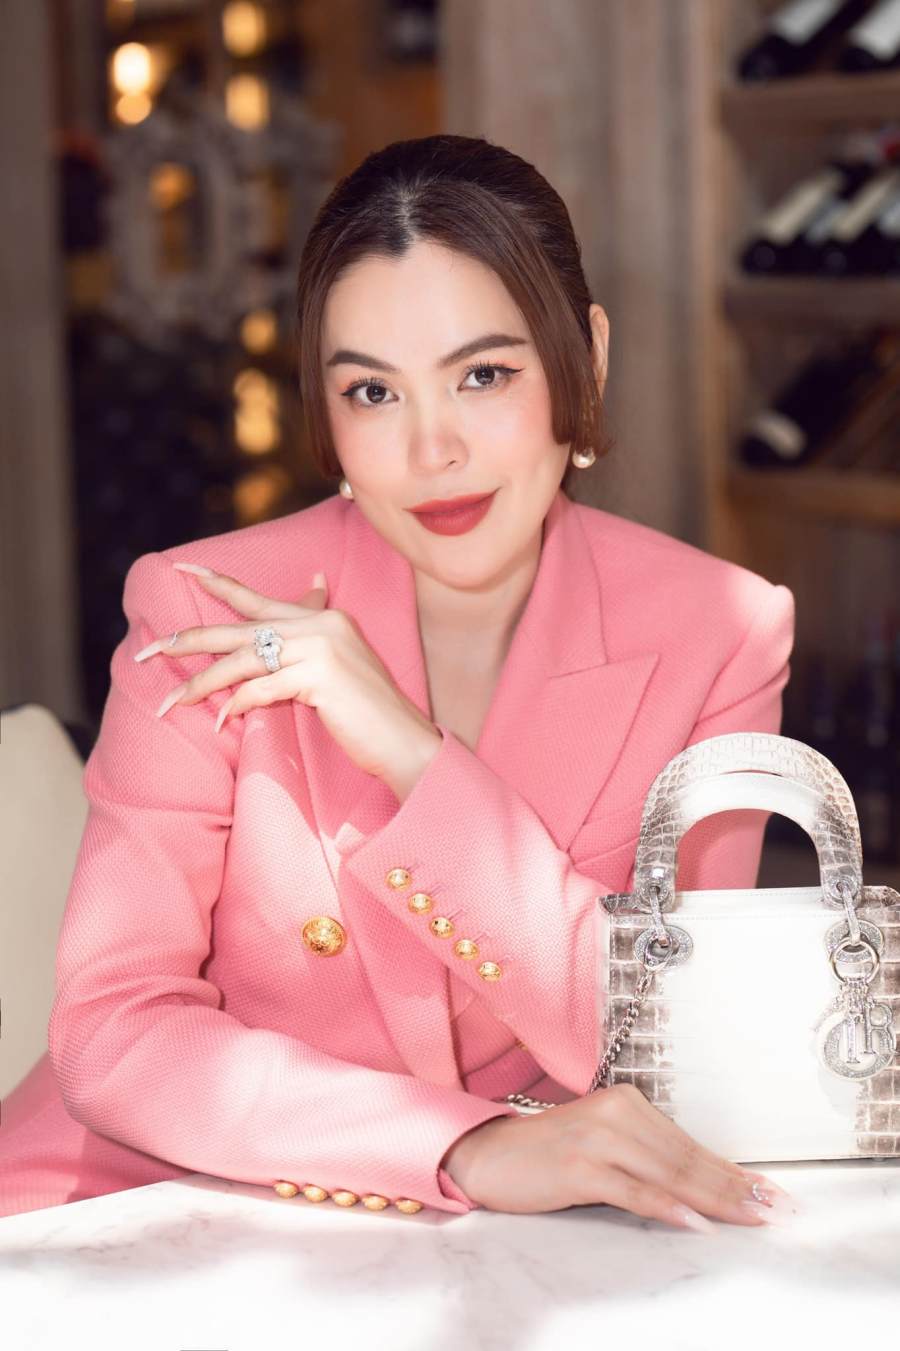 Hoa hậu Phương Lê xinh đẹp, sang trọng với đồ hiệu kín người.